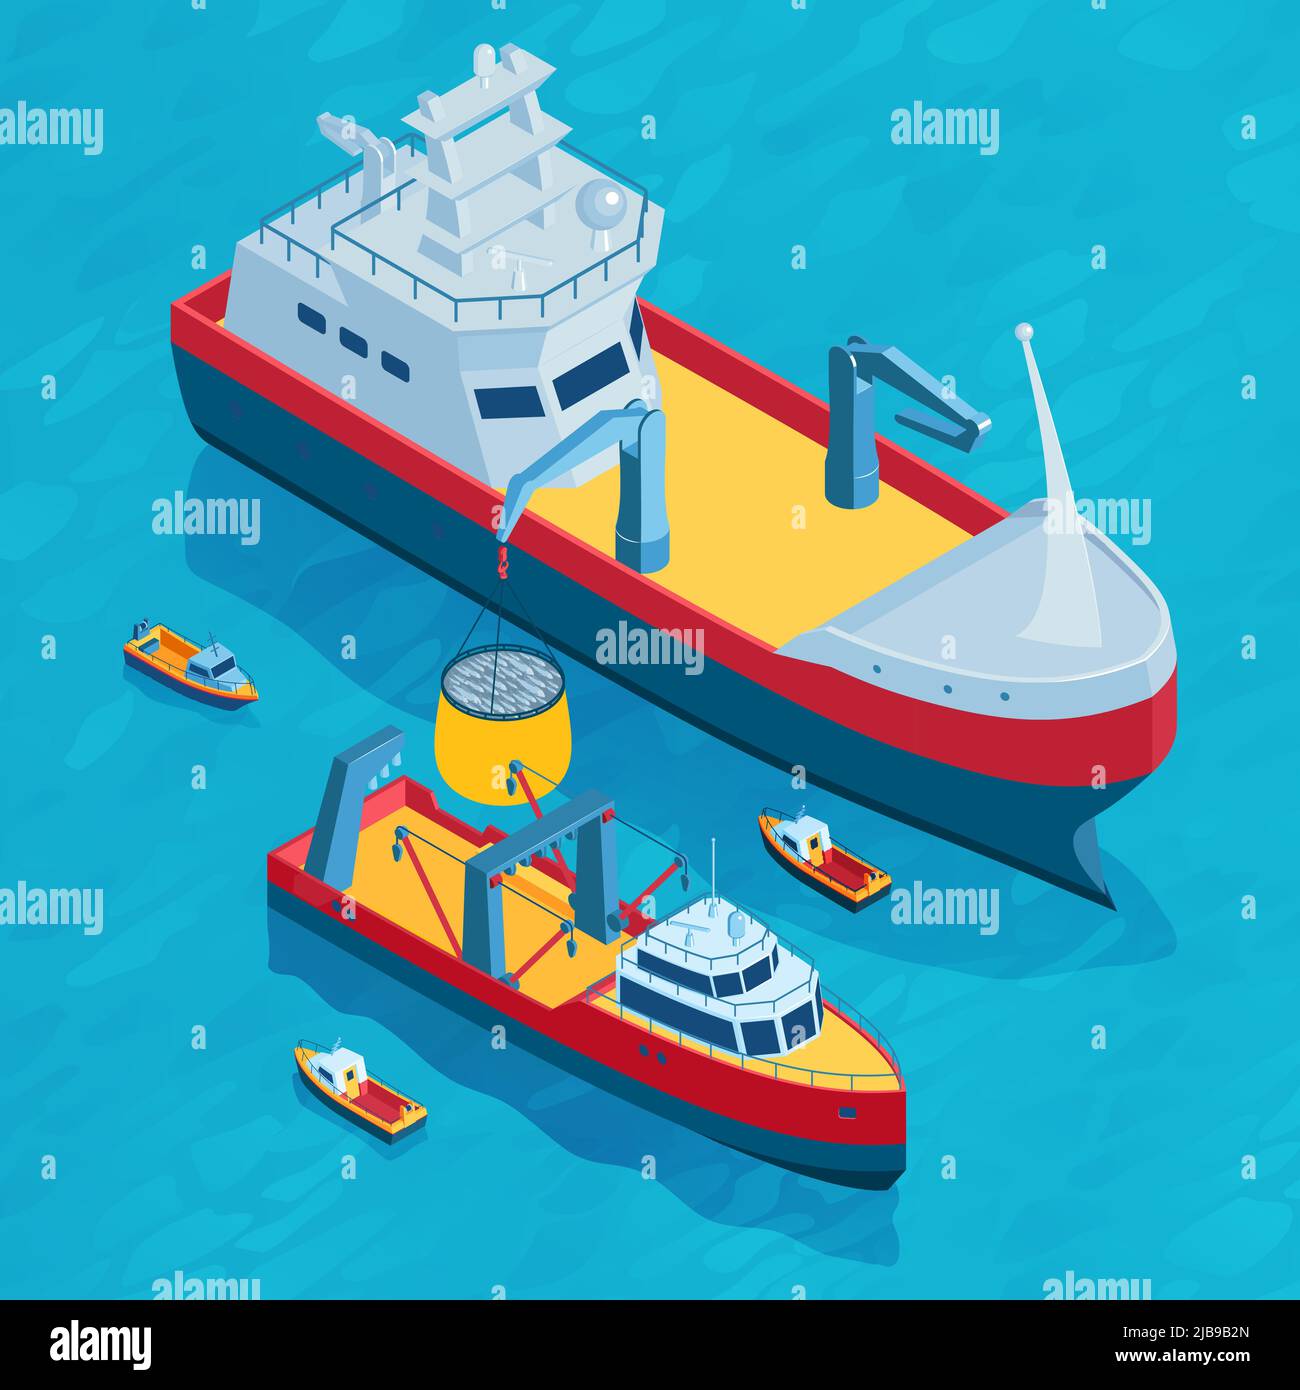 Isometrische kommerzielle Fischerei quadratische Zusammensetzung mit kleinen und großen Schleppnetzen ausgestattete Boote in offenen Meer Landschaft Vektor-Illustration Stock Vektor